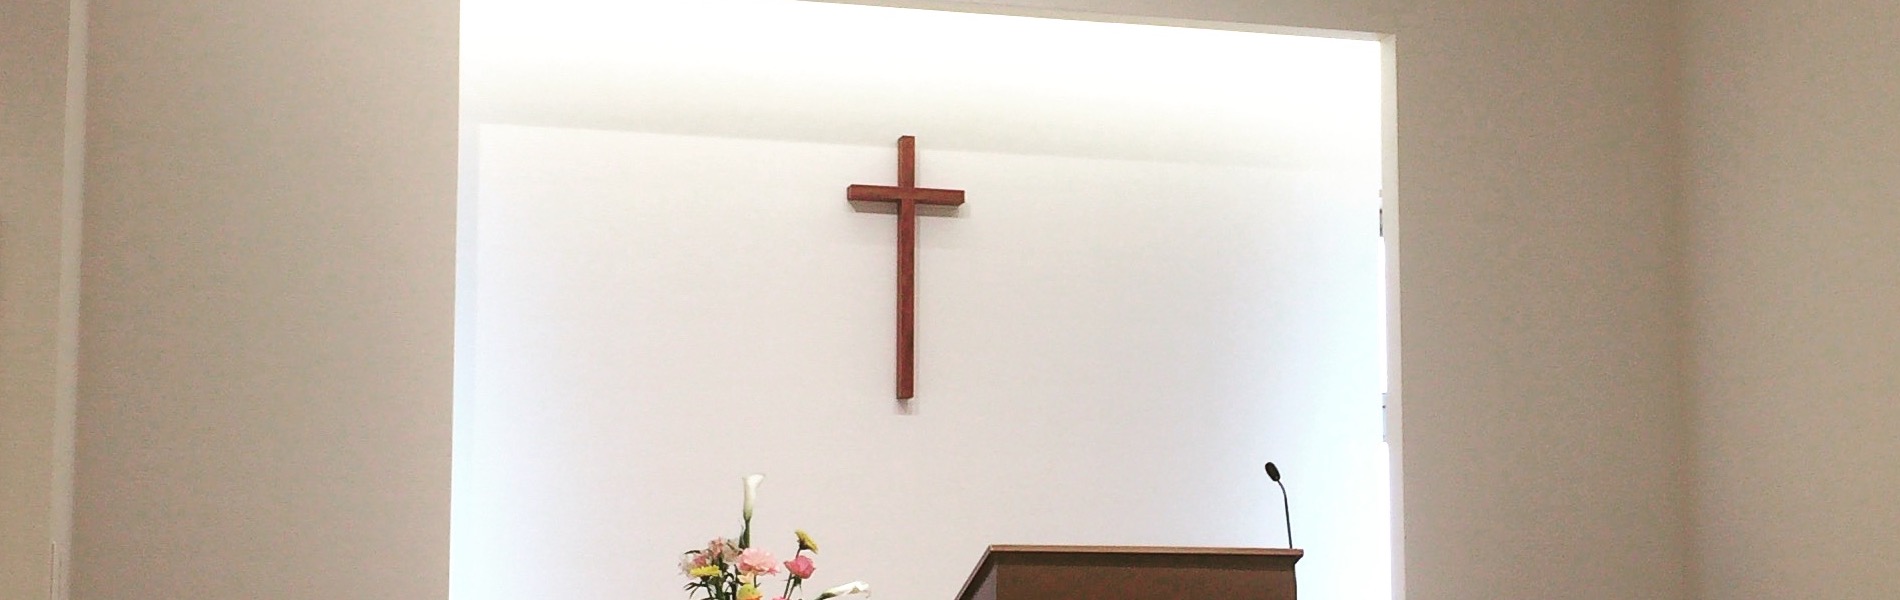 日本基督教団洛南教会の公式Webサイトです